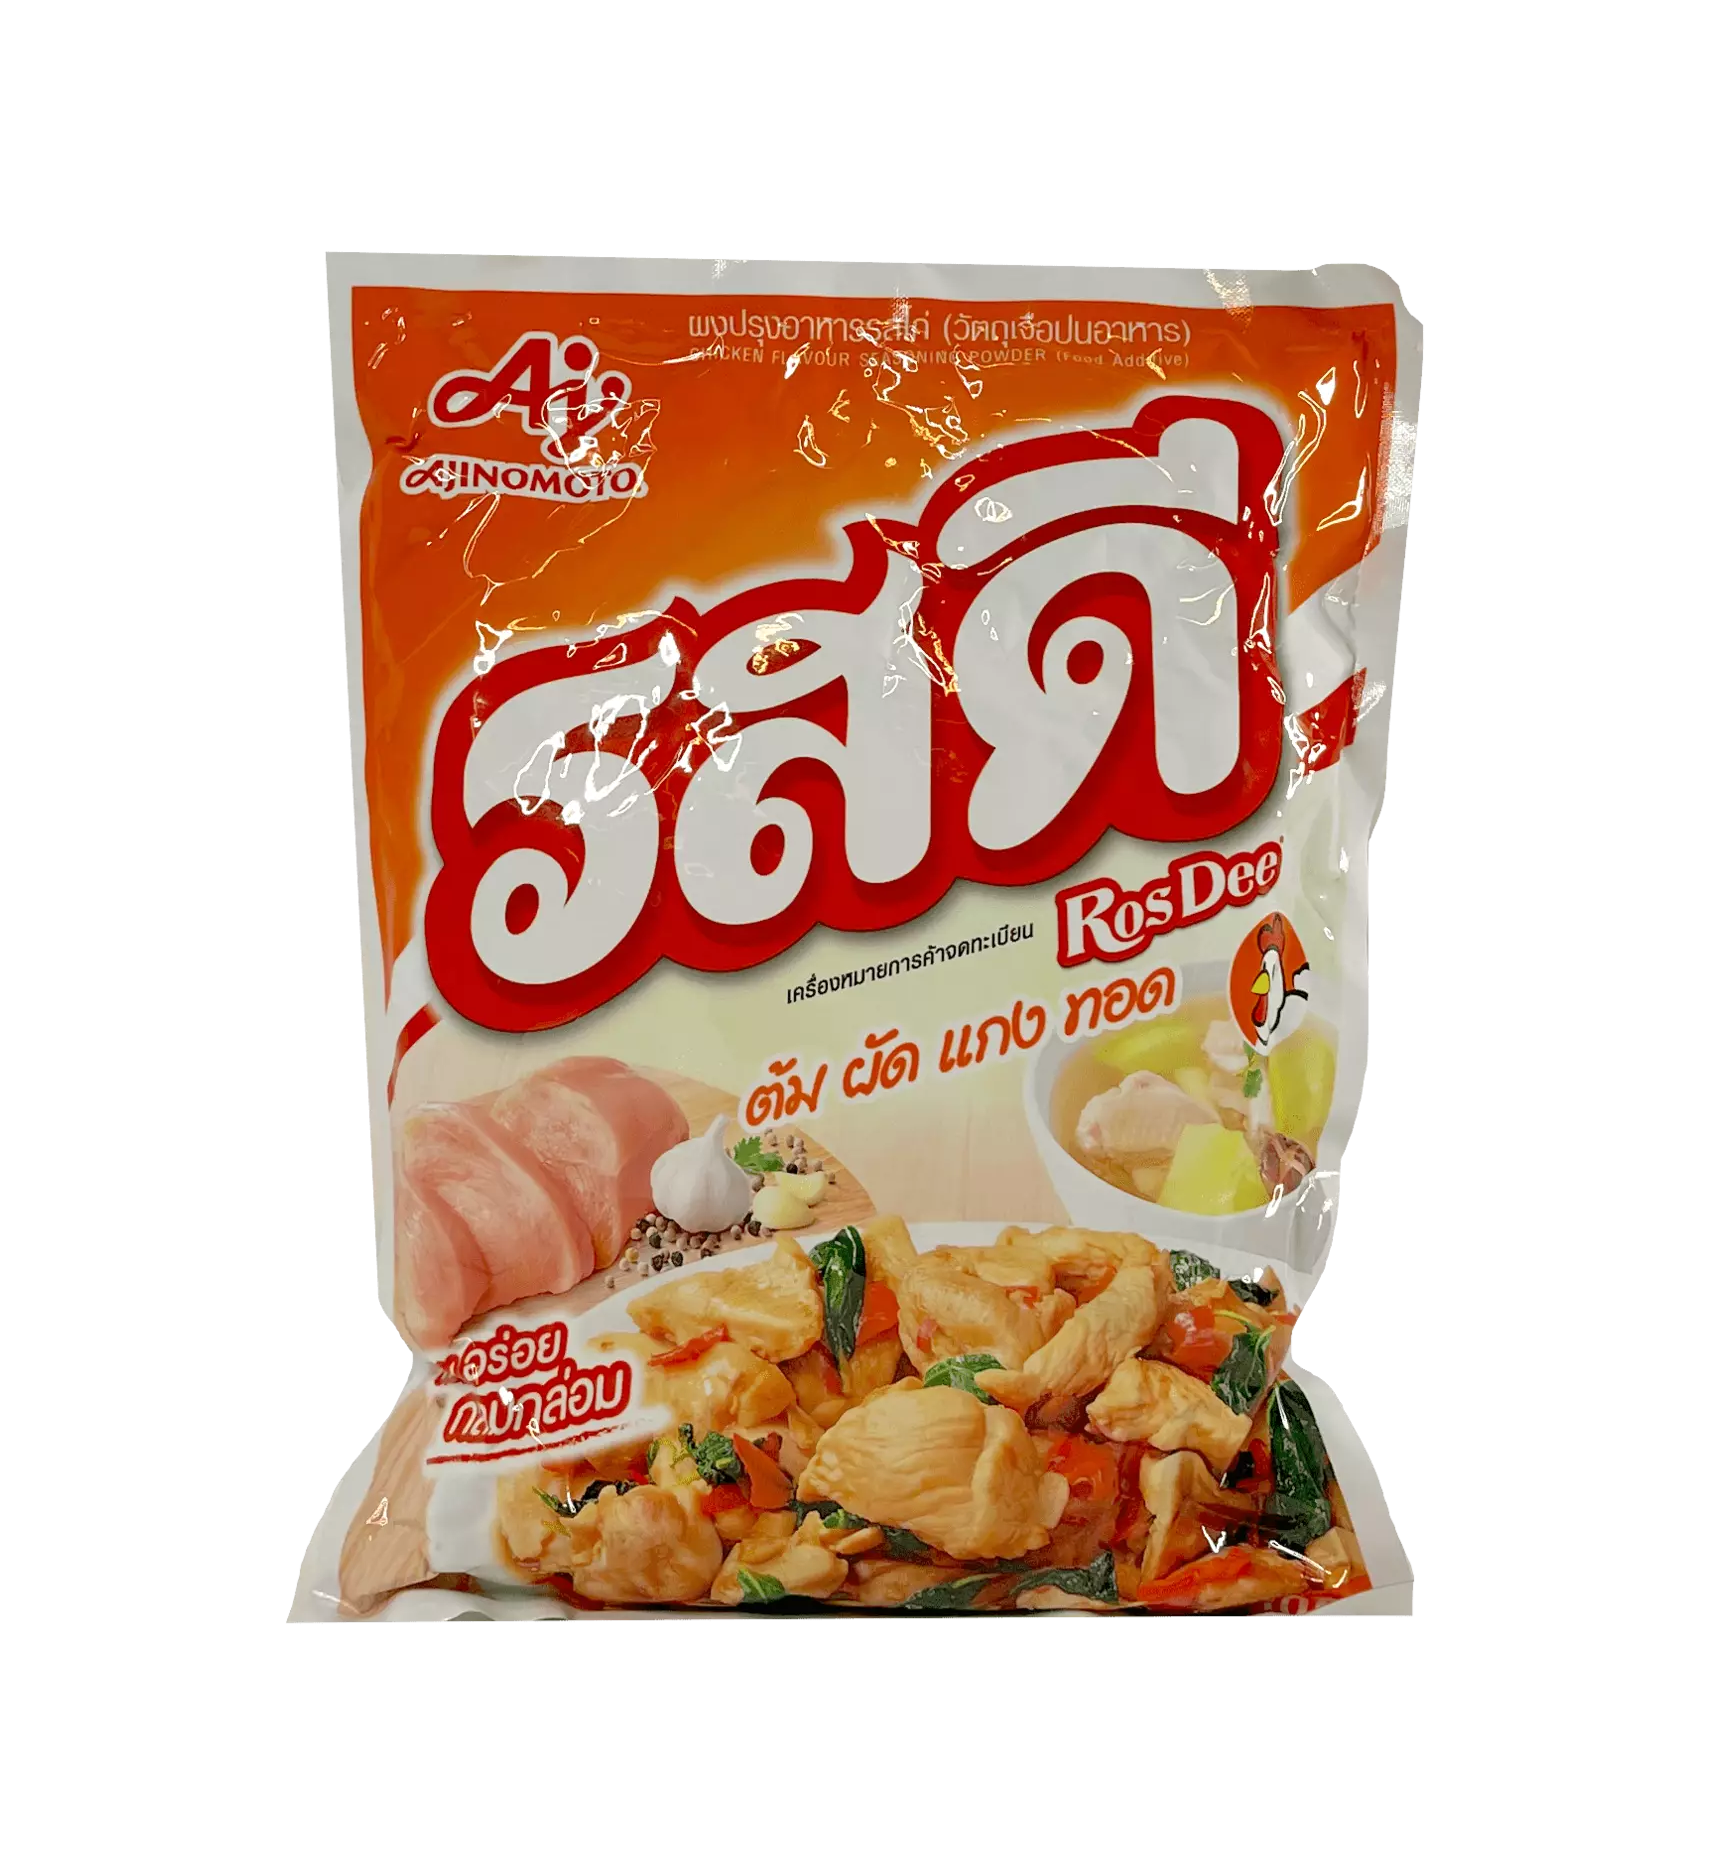 雞肉风味 调理粉 850g Rosdee 泰国